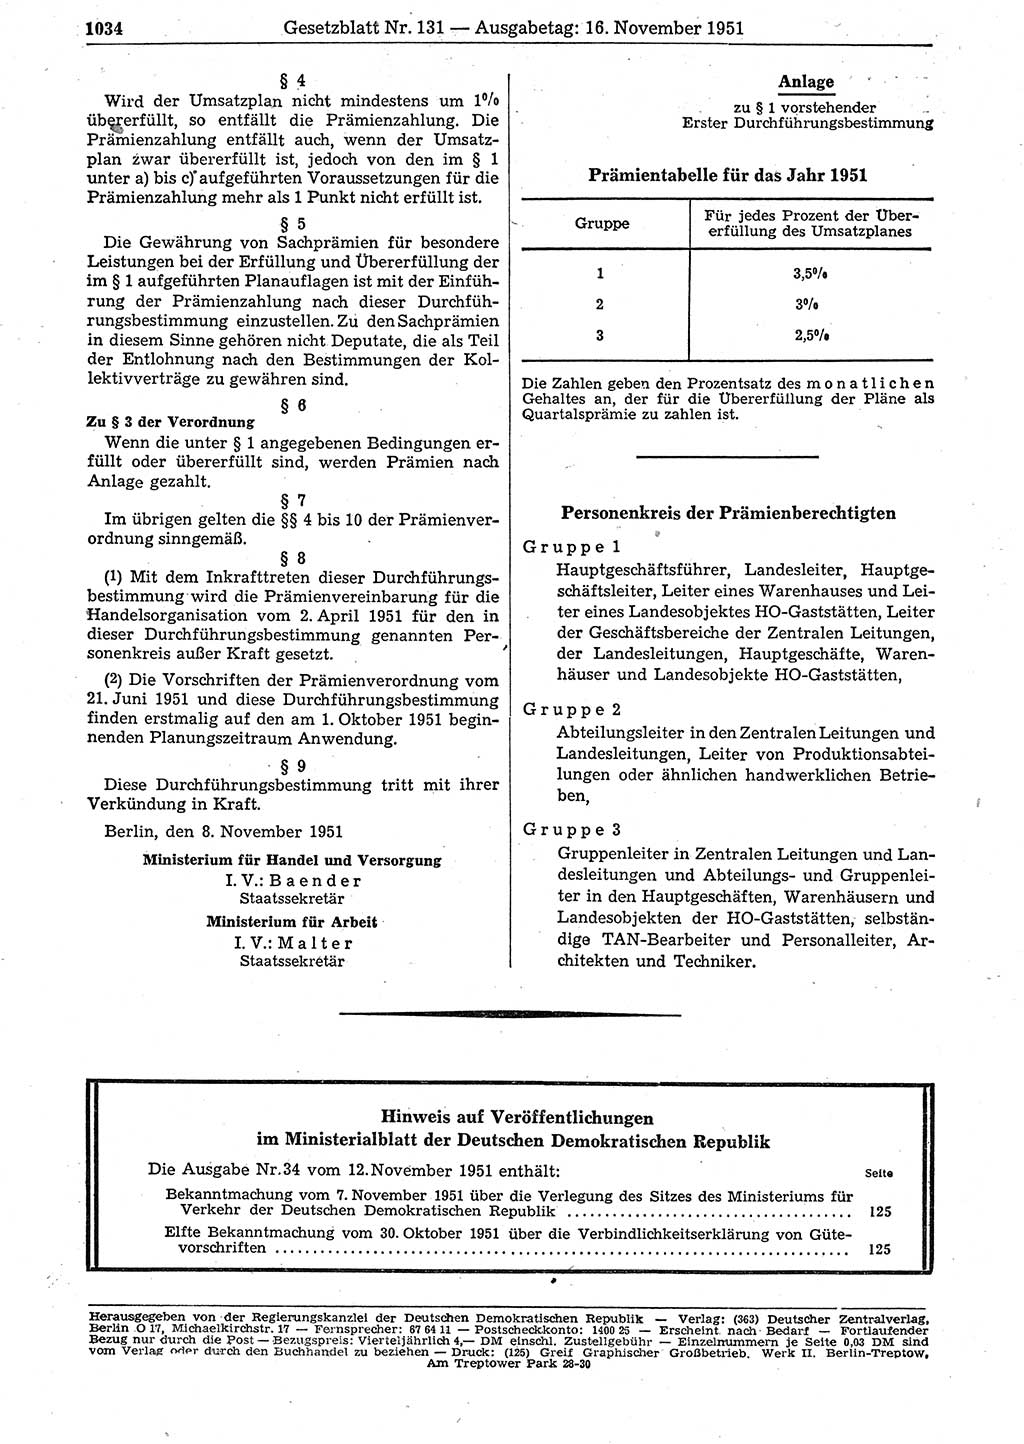 Gesetzblatt (GBl.) der Deutschen Demokratischen Republik (DDR) 1951, Seite 1034 (GBl. DDR 1951, S. 1034)